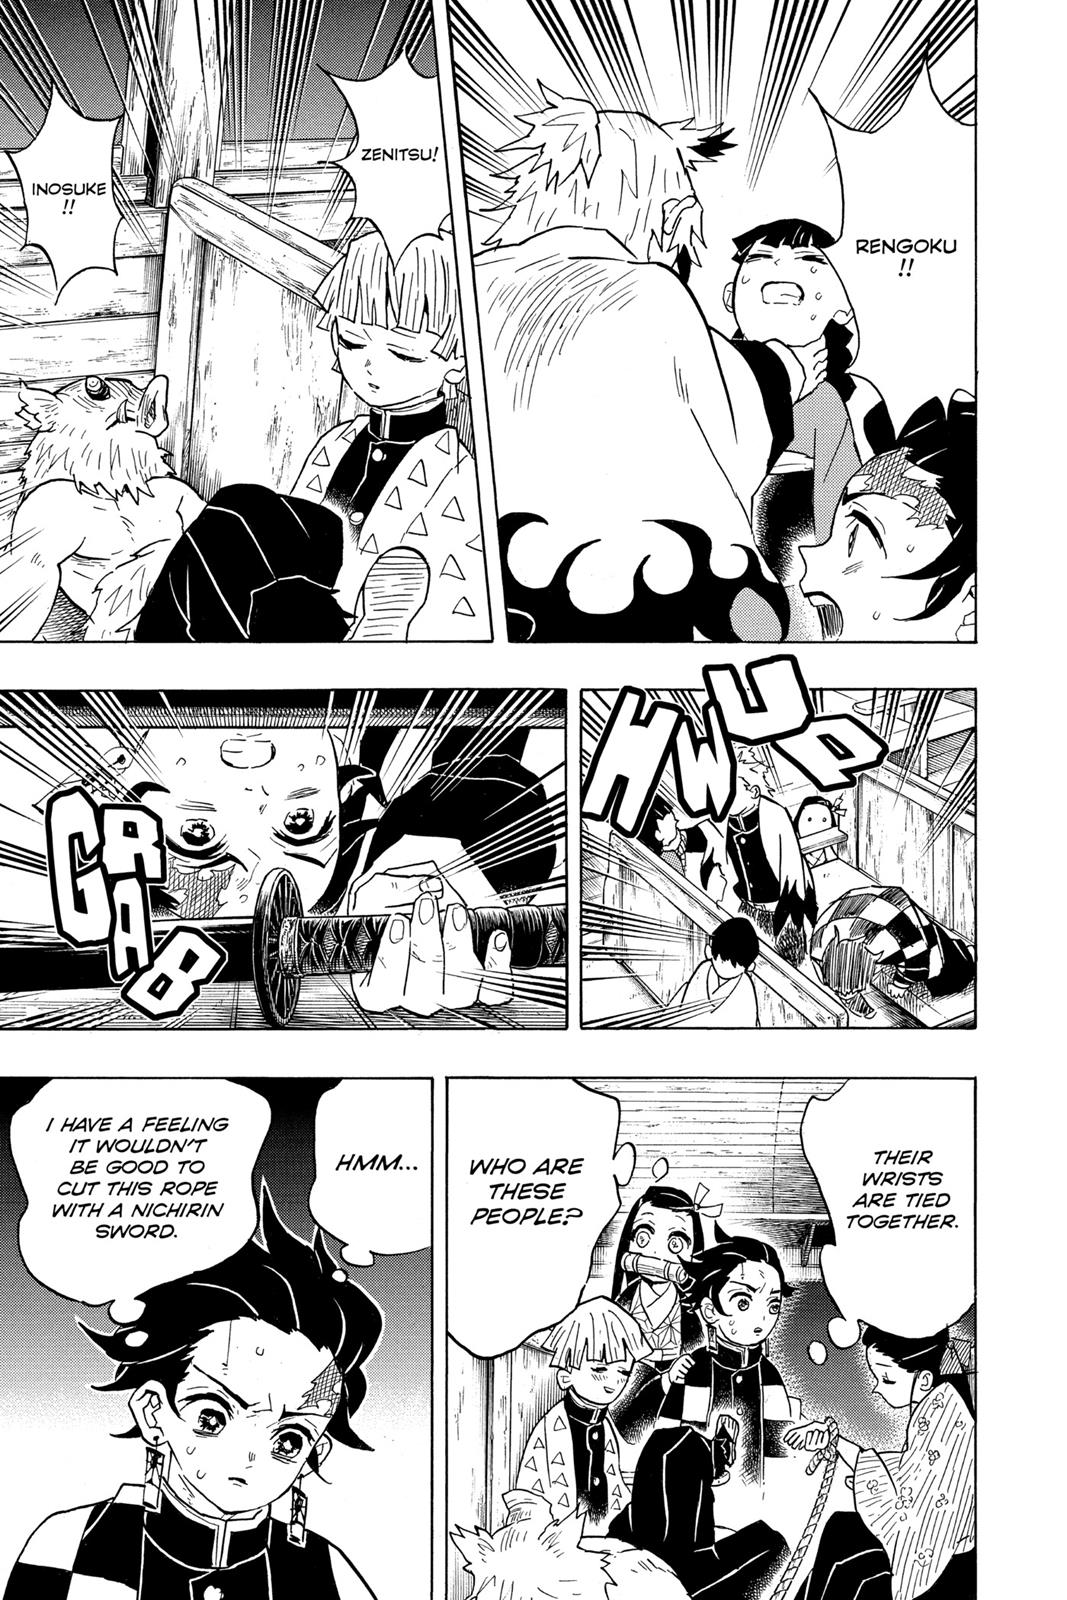 Demon Slayer Manga Manga Chapter - 58 - image 2